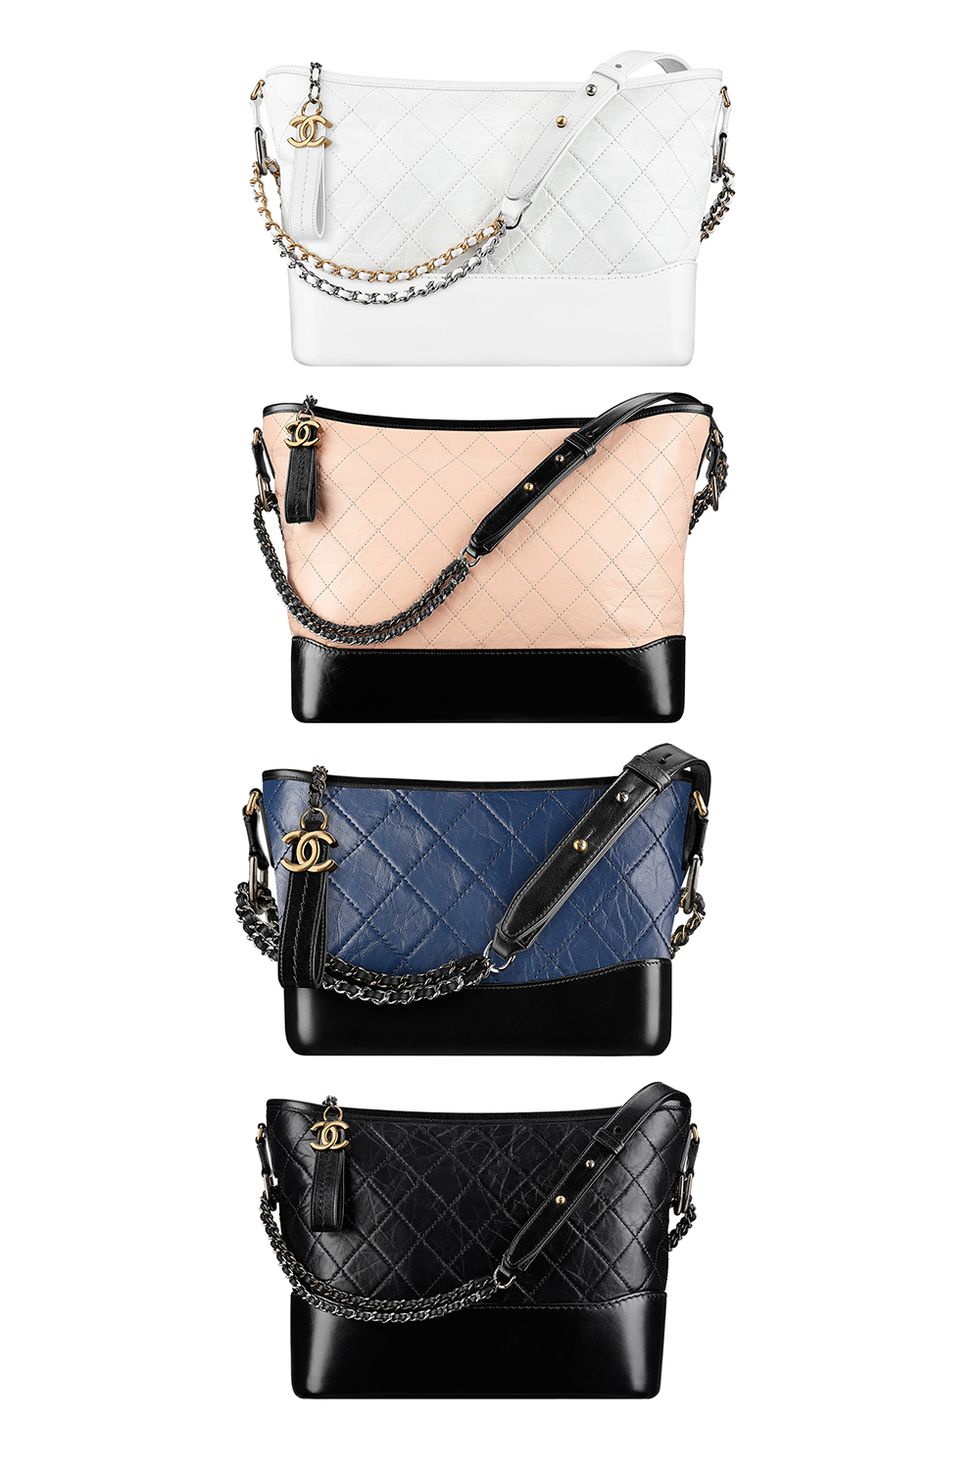 <p>Una Chanel 2.55 è per sempre, ma la nuova borsa Gabrielle è perfetta per ora. Sospettiamo che questa borsa porterà un ritorno delle borse hobo: che fine hanno fatto in quest'ultimo decennio? Se cercate una borsa che dura per sempre e che non si vede dappertutto, allora questa è quella che fa per voi.</p>